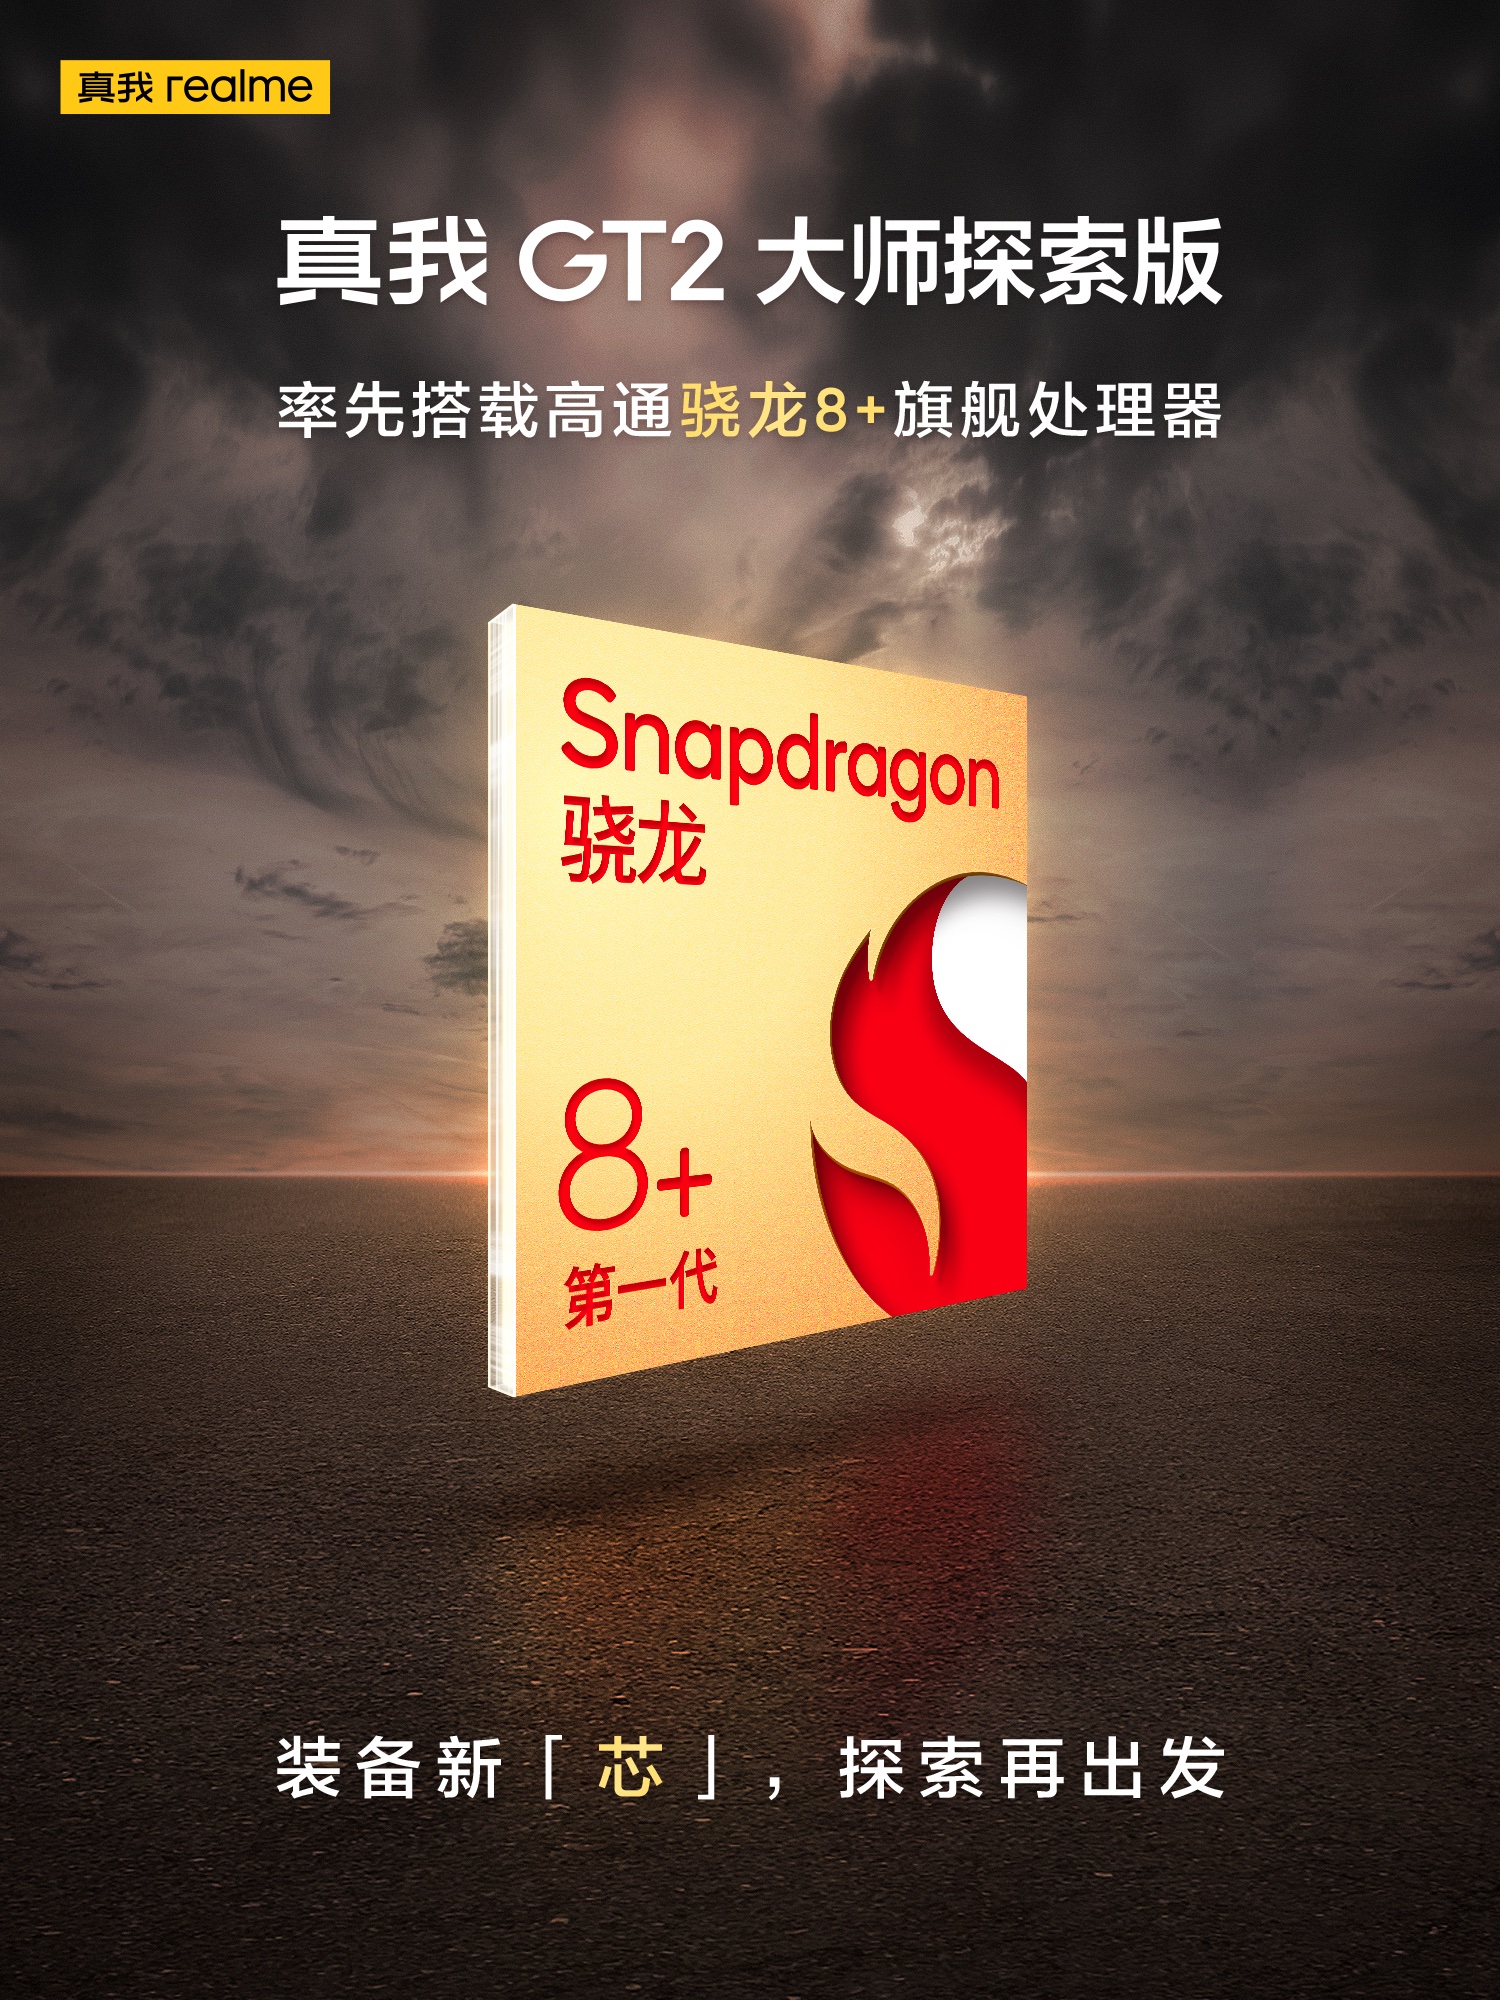 ASUS ROG Phone 6 dan realme GT 2 Master Explorer Edition akan jadi telefon pintar pertama dengan cip Snapdragon 8+ Gen 1 6